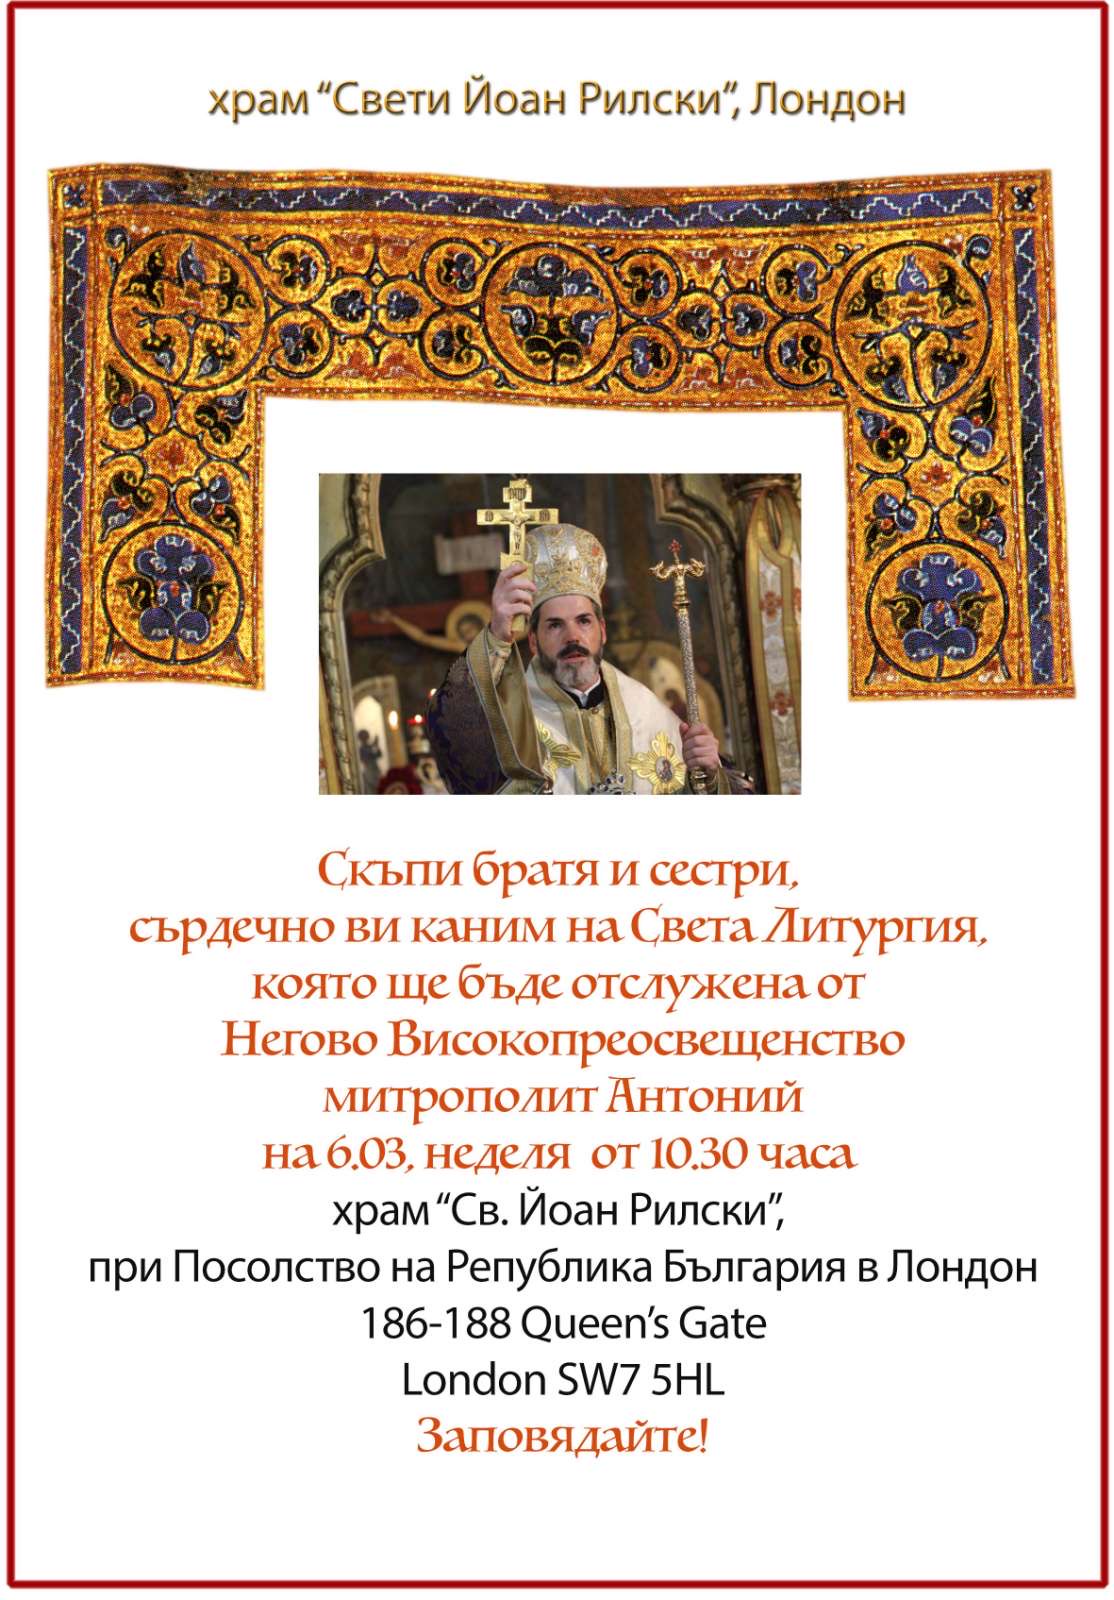 Негово Високопреосвещенство митрополит Антоний ще отслужи Света литургия на 06.03.2022 в Лондон